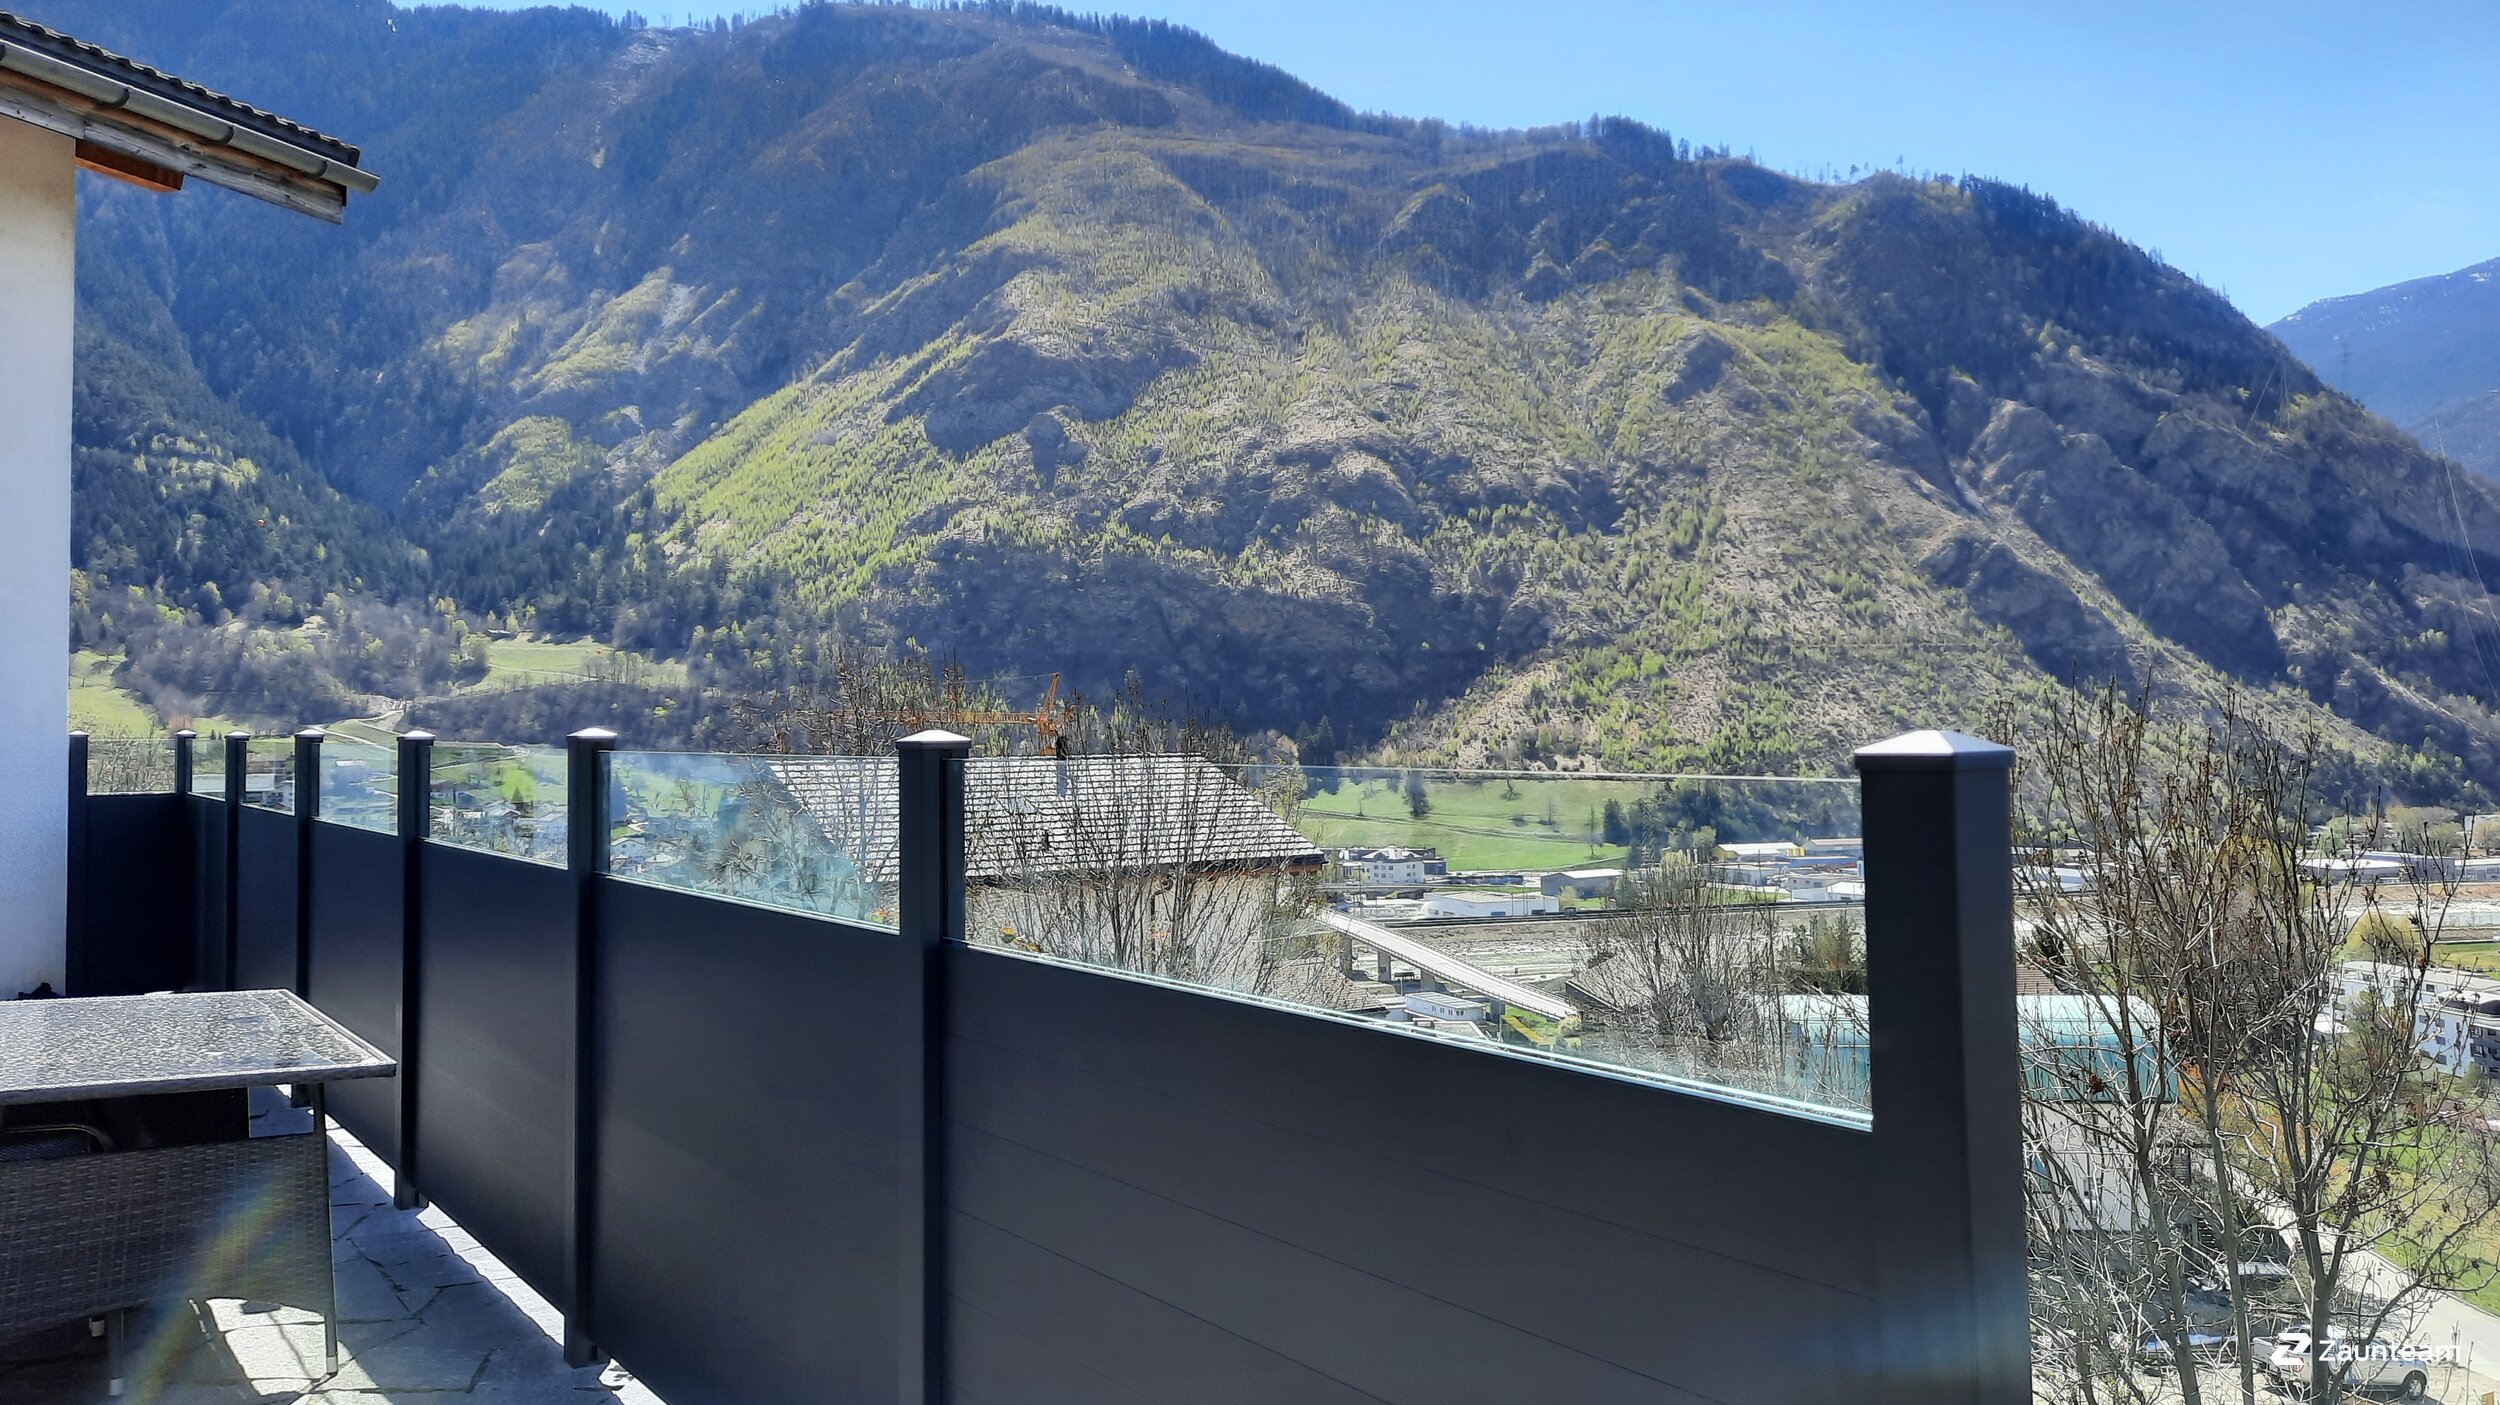 Protection brise-vue en aluminium de 2021 à 3931 Lalden Suisse de Zaunteam Wallis / Swissclôture Valais.